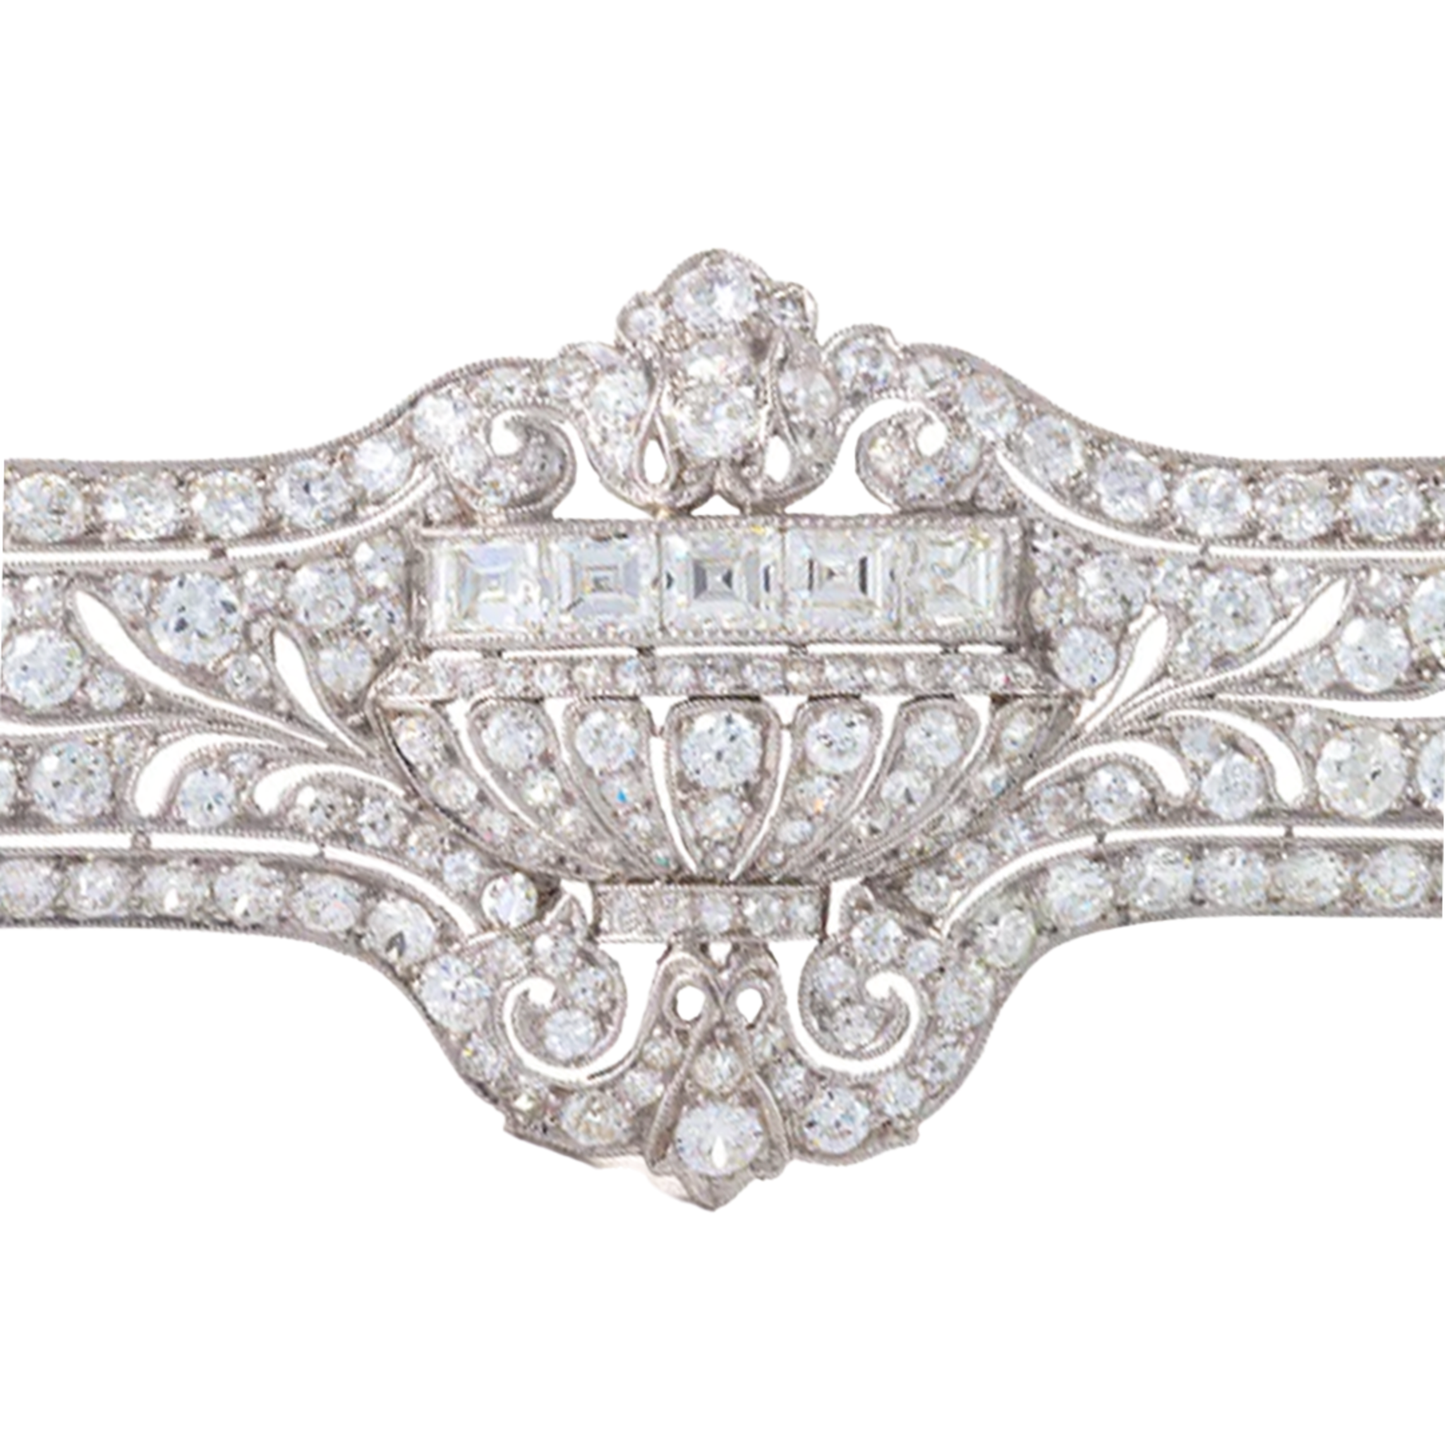 E.M. Gattle & Co. Art Deco Platinum Diamond Brooch close-up details